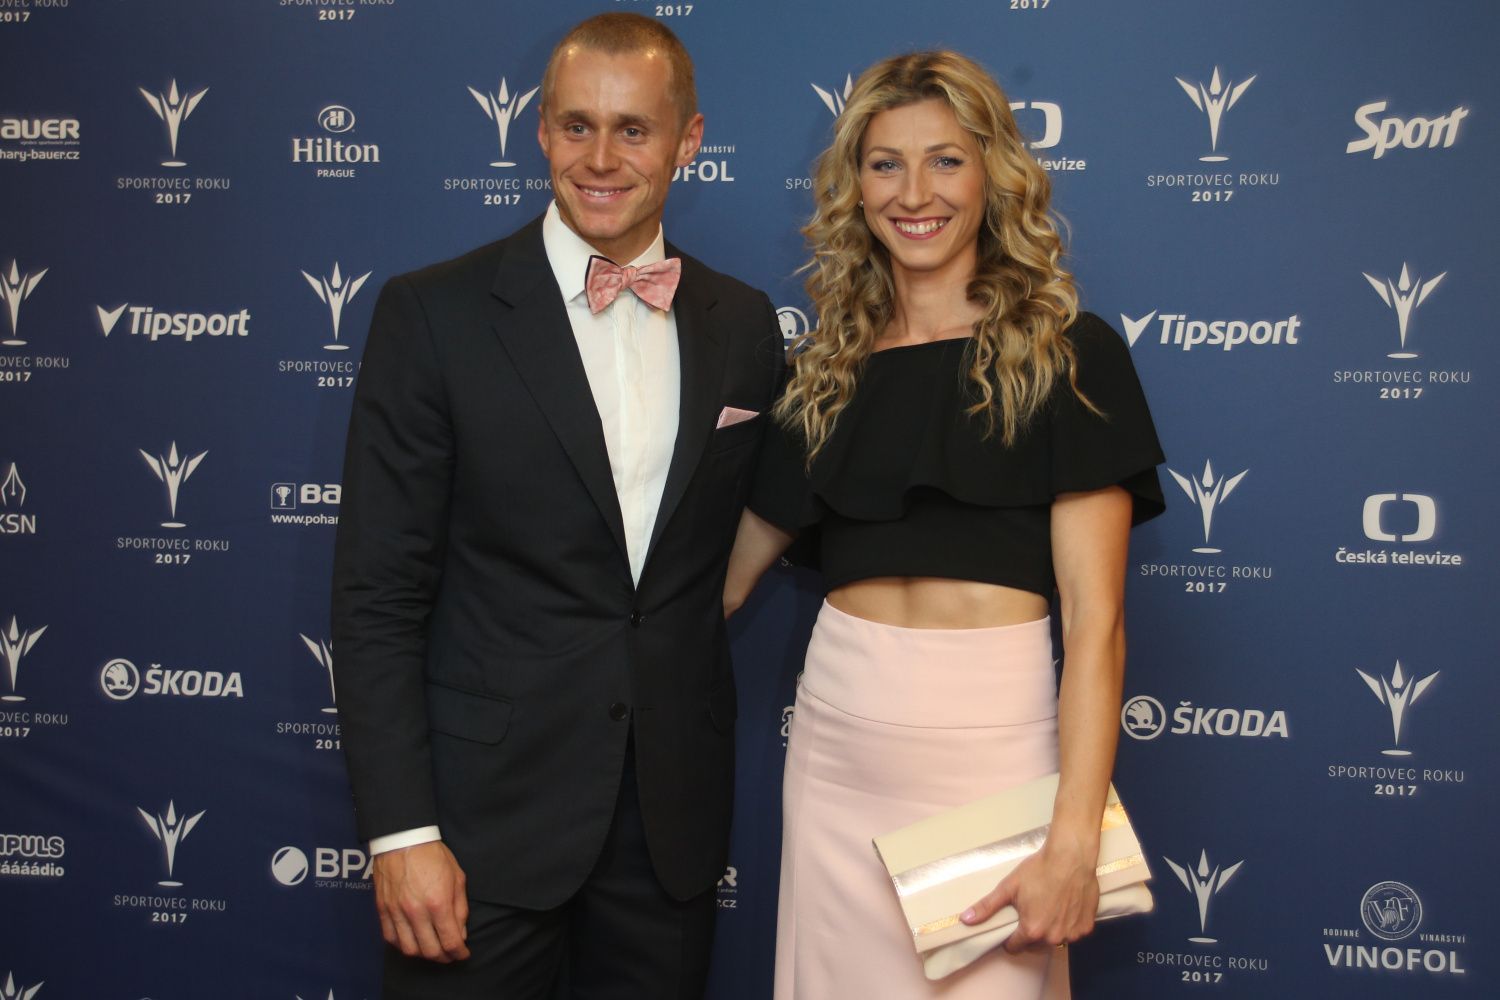 Sportovec roku 2017: Jakub Vadlejch a manželka Lucie Slaníčková